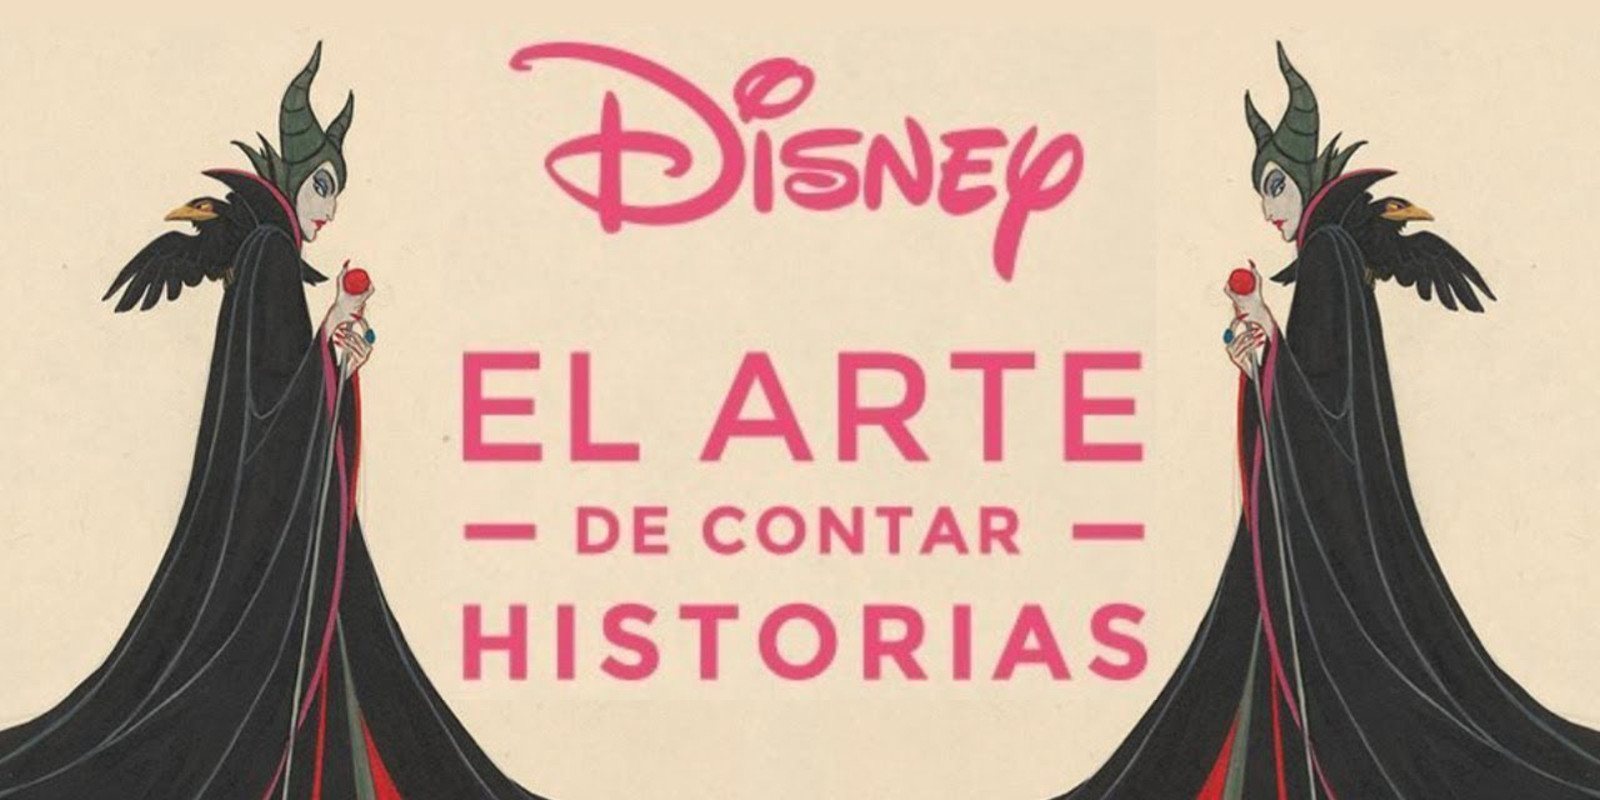 'Disney: El arte de contar historias', la nueva exposición de Disney que llega a Madrid